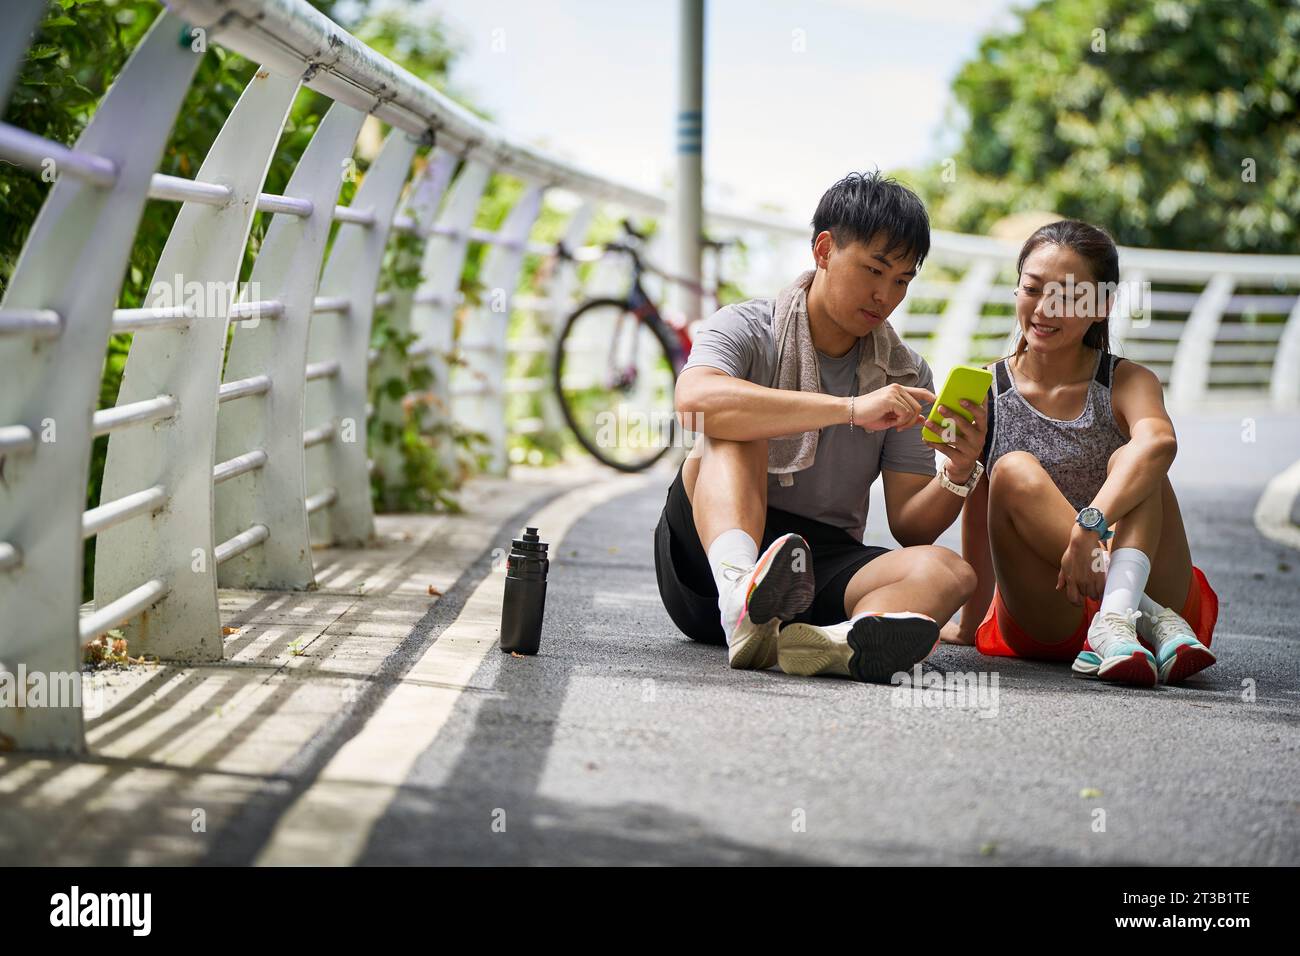 jeune couple asiatique partageant des photos de téléphone portable tout en prenant une pause pendant l'exercice en plein air Banque D'Images